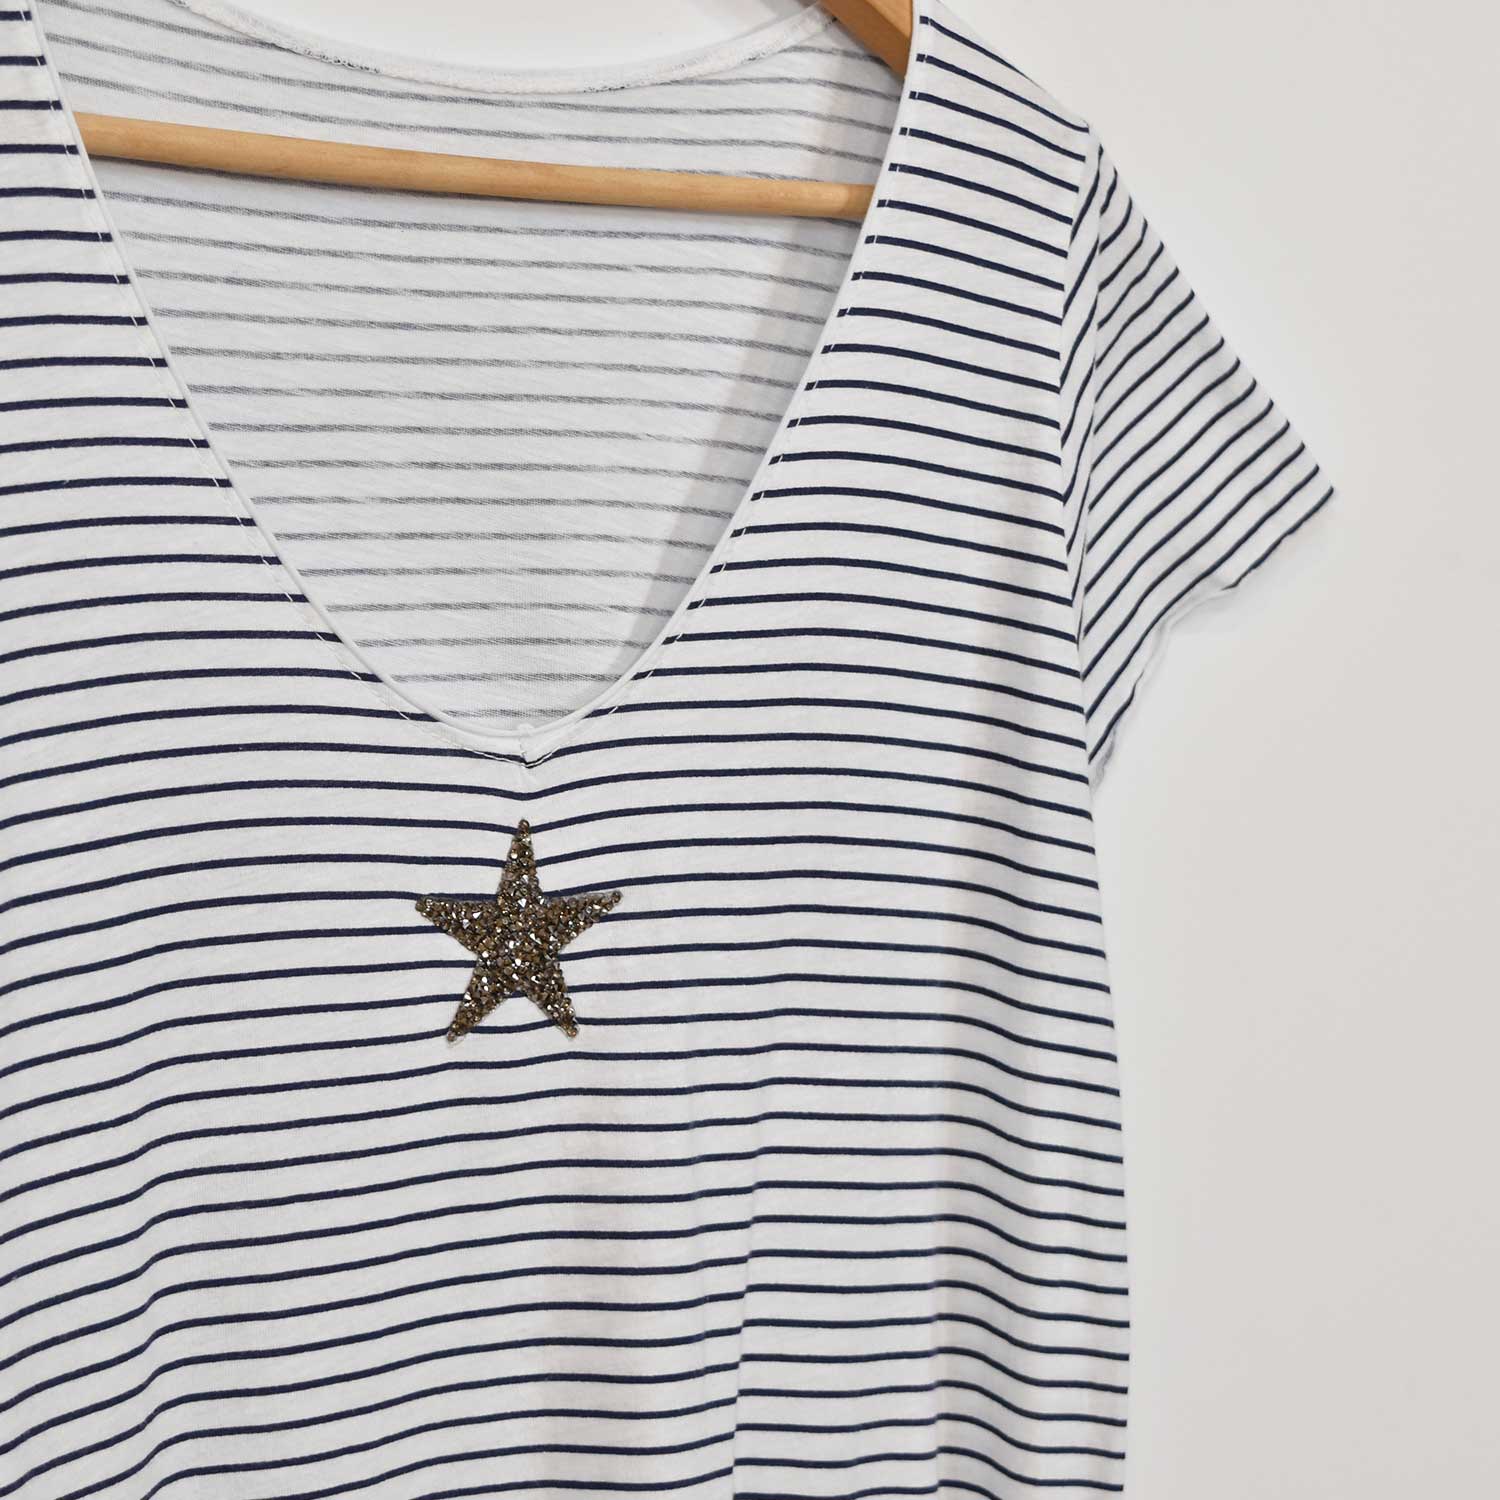 Star dress with navy stripes